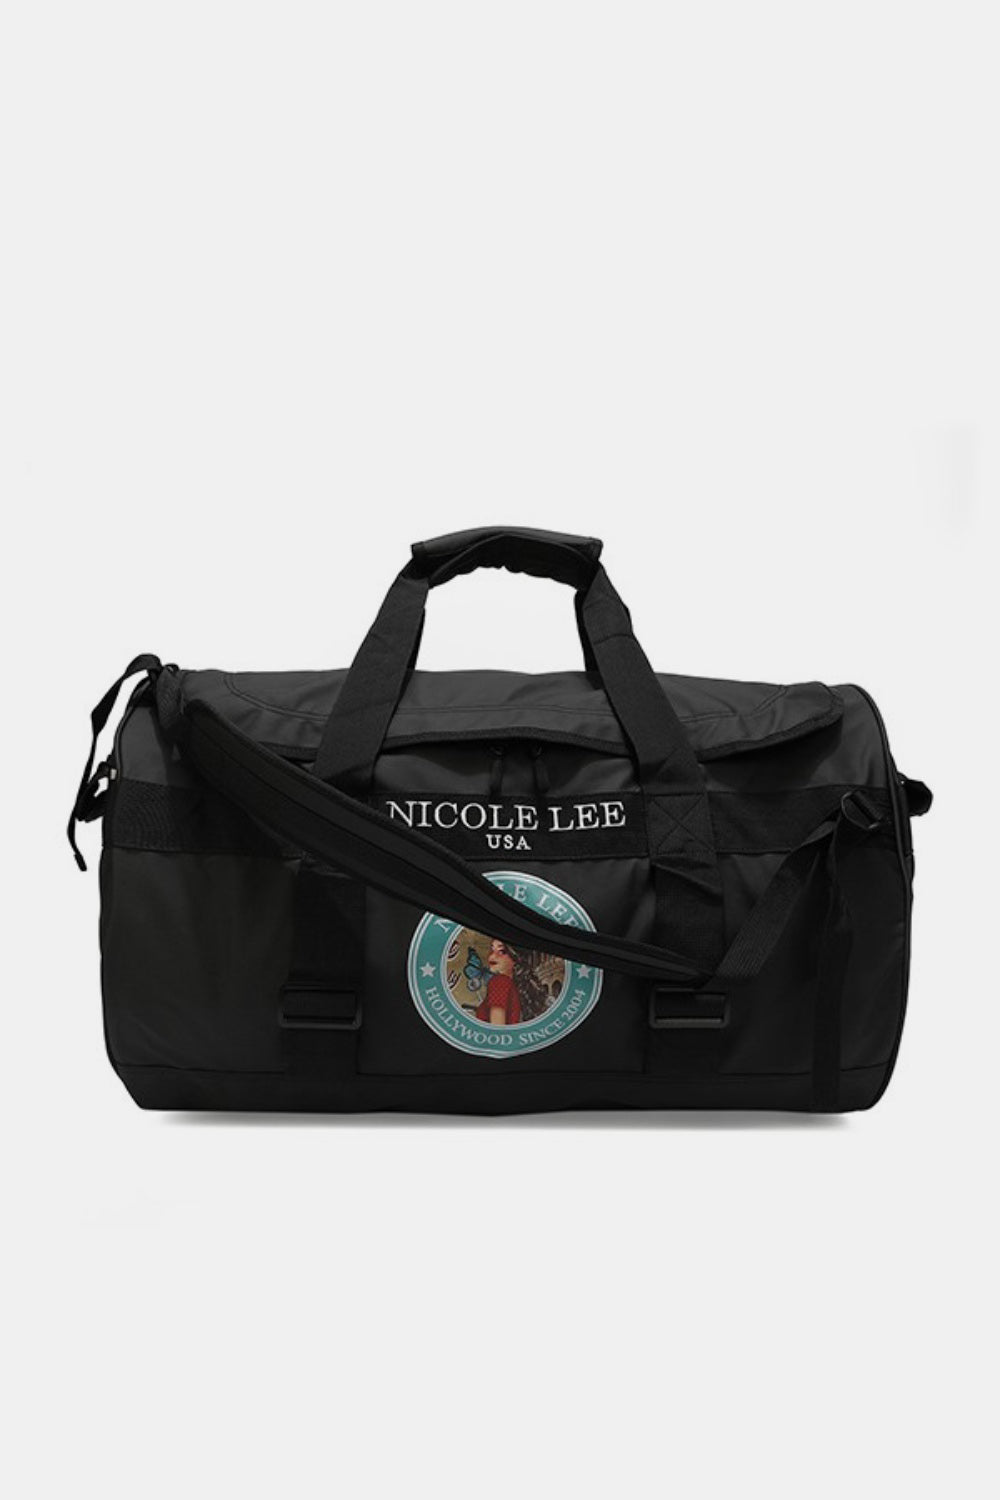 TEEK - NL Large Duffel Bag BAG TEEK Trend Black  